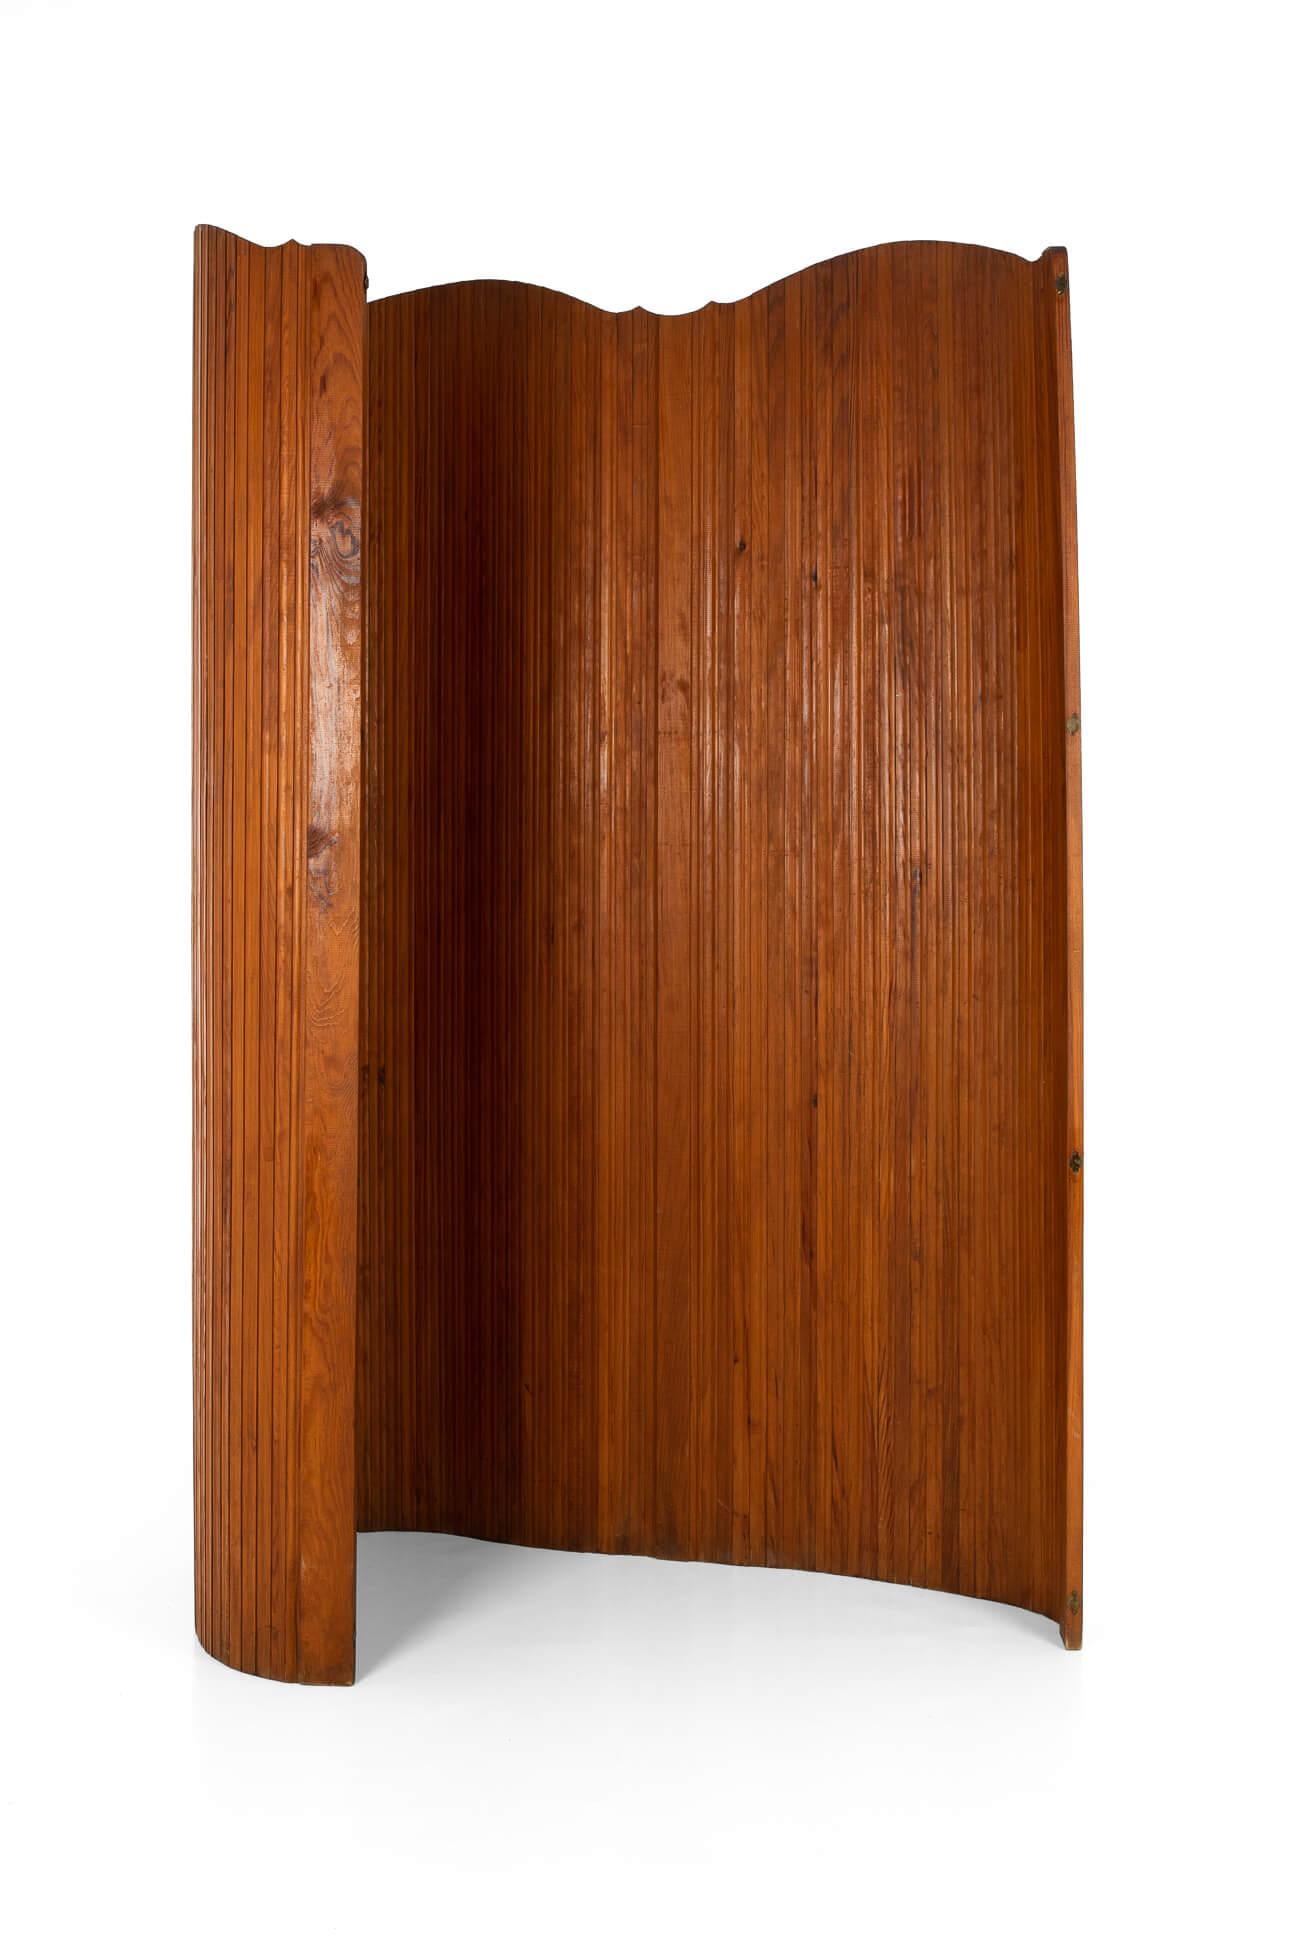 Ein eleganter Tambour-Raumteiler aus Kiefernholz des französischen Designhauses S.N.S.A.

Mit einem unsichtbaren Draht, der die Lamellen miteinander verbindet, lässt sich der Paravent in verschiedenen Formen aufstellen.

Der Paravent ist ein